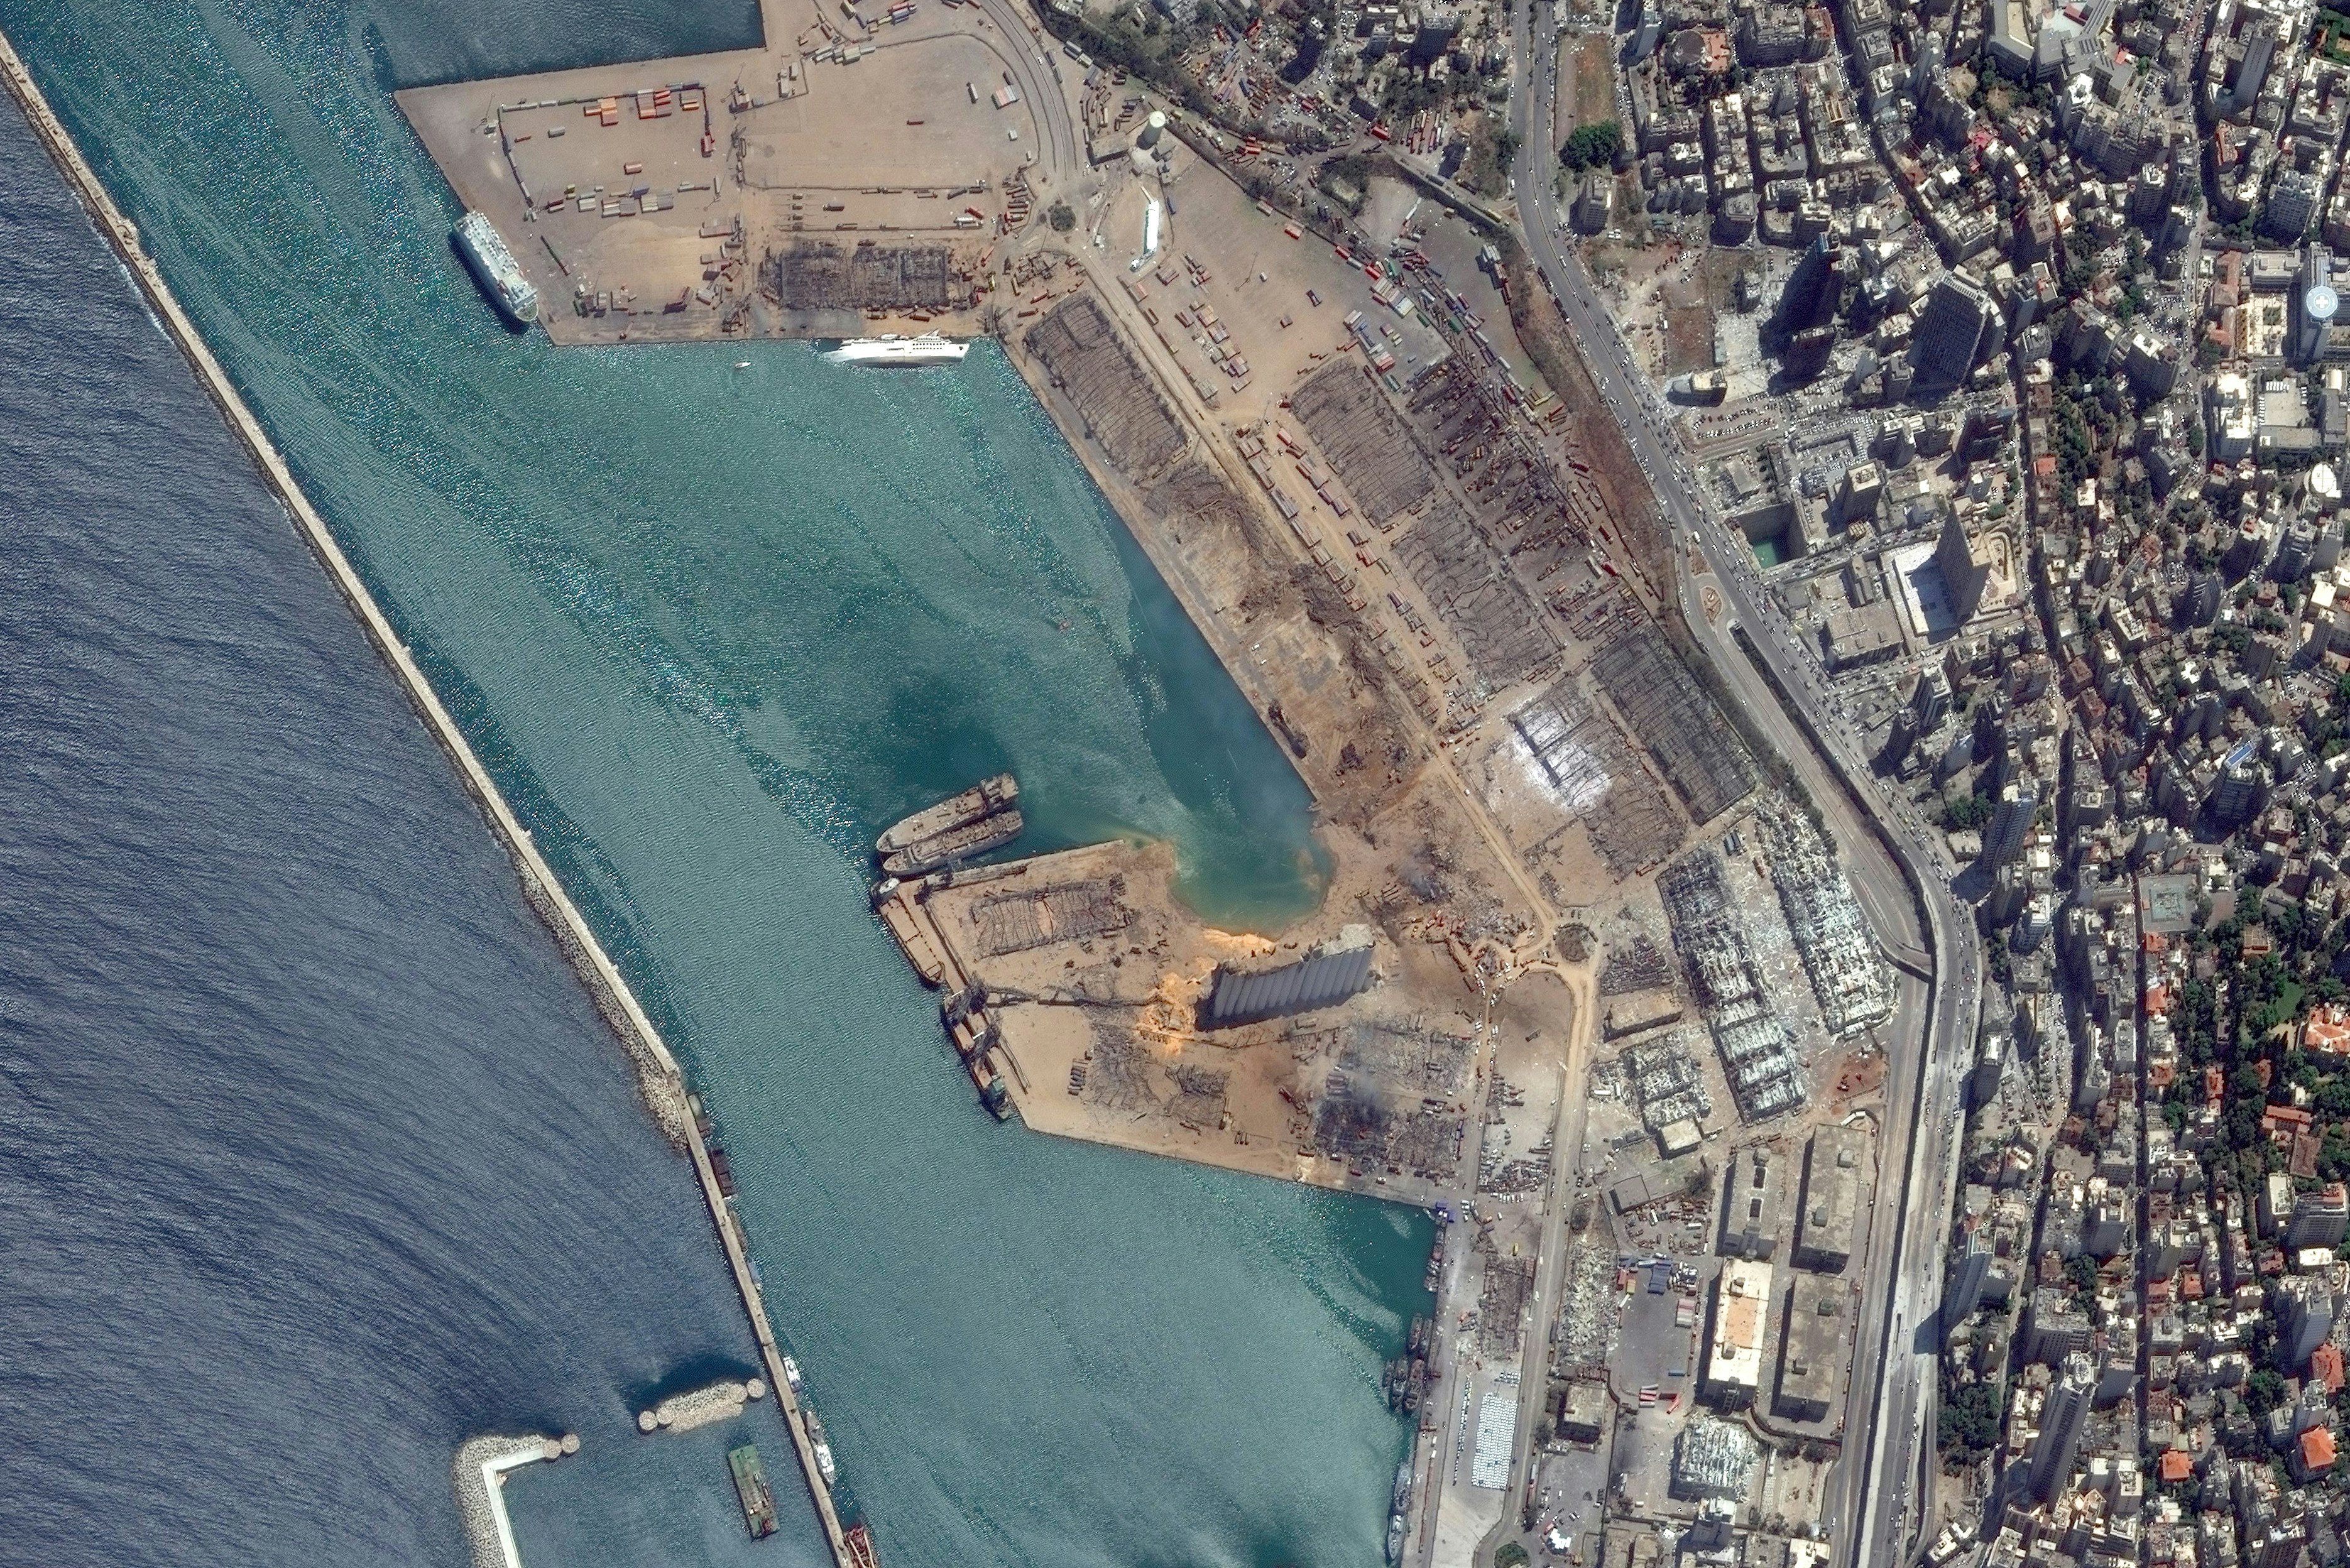 Beirut Port Explosion